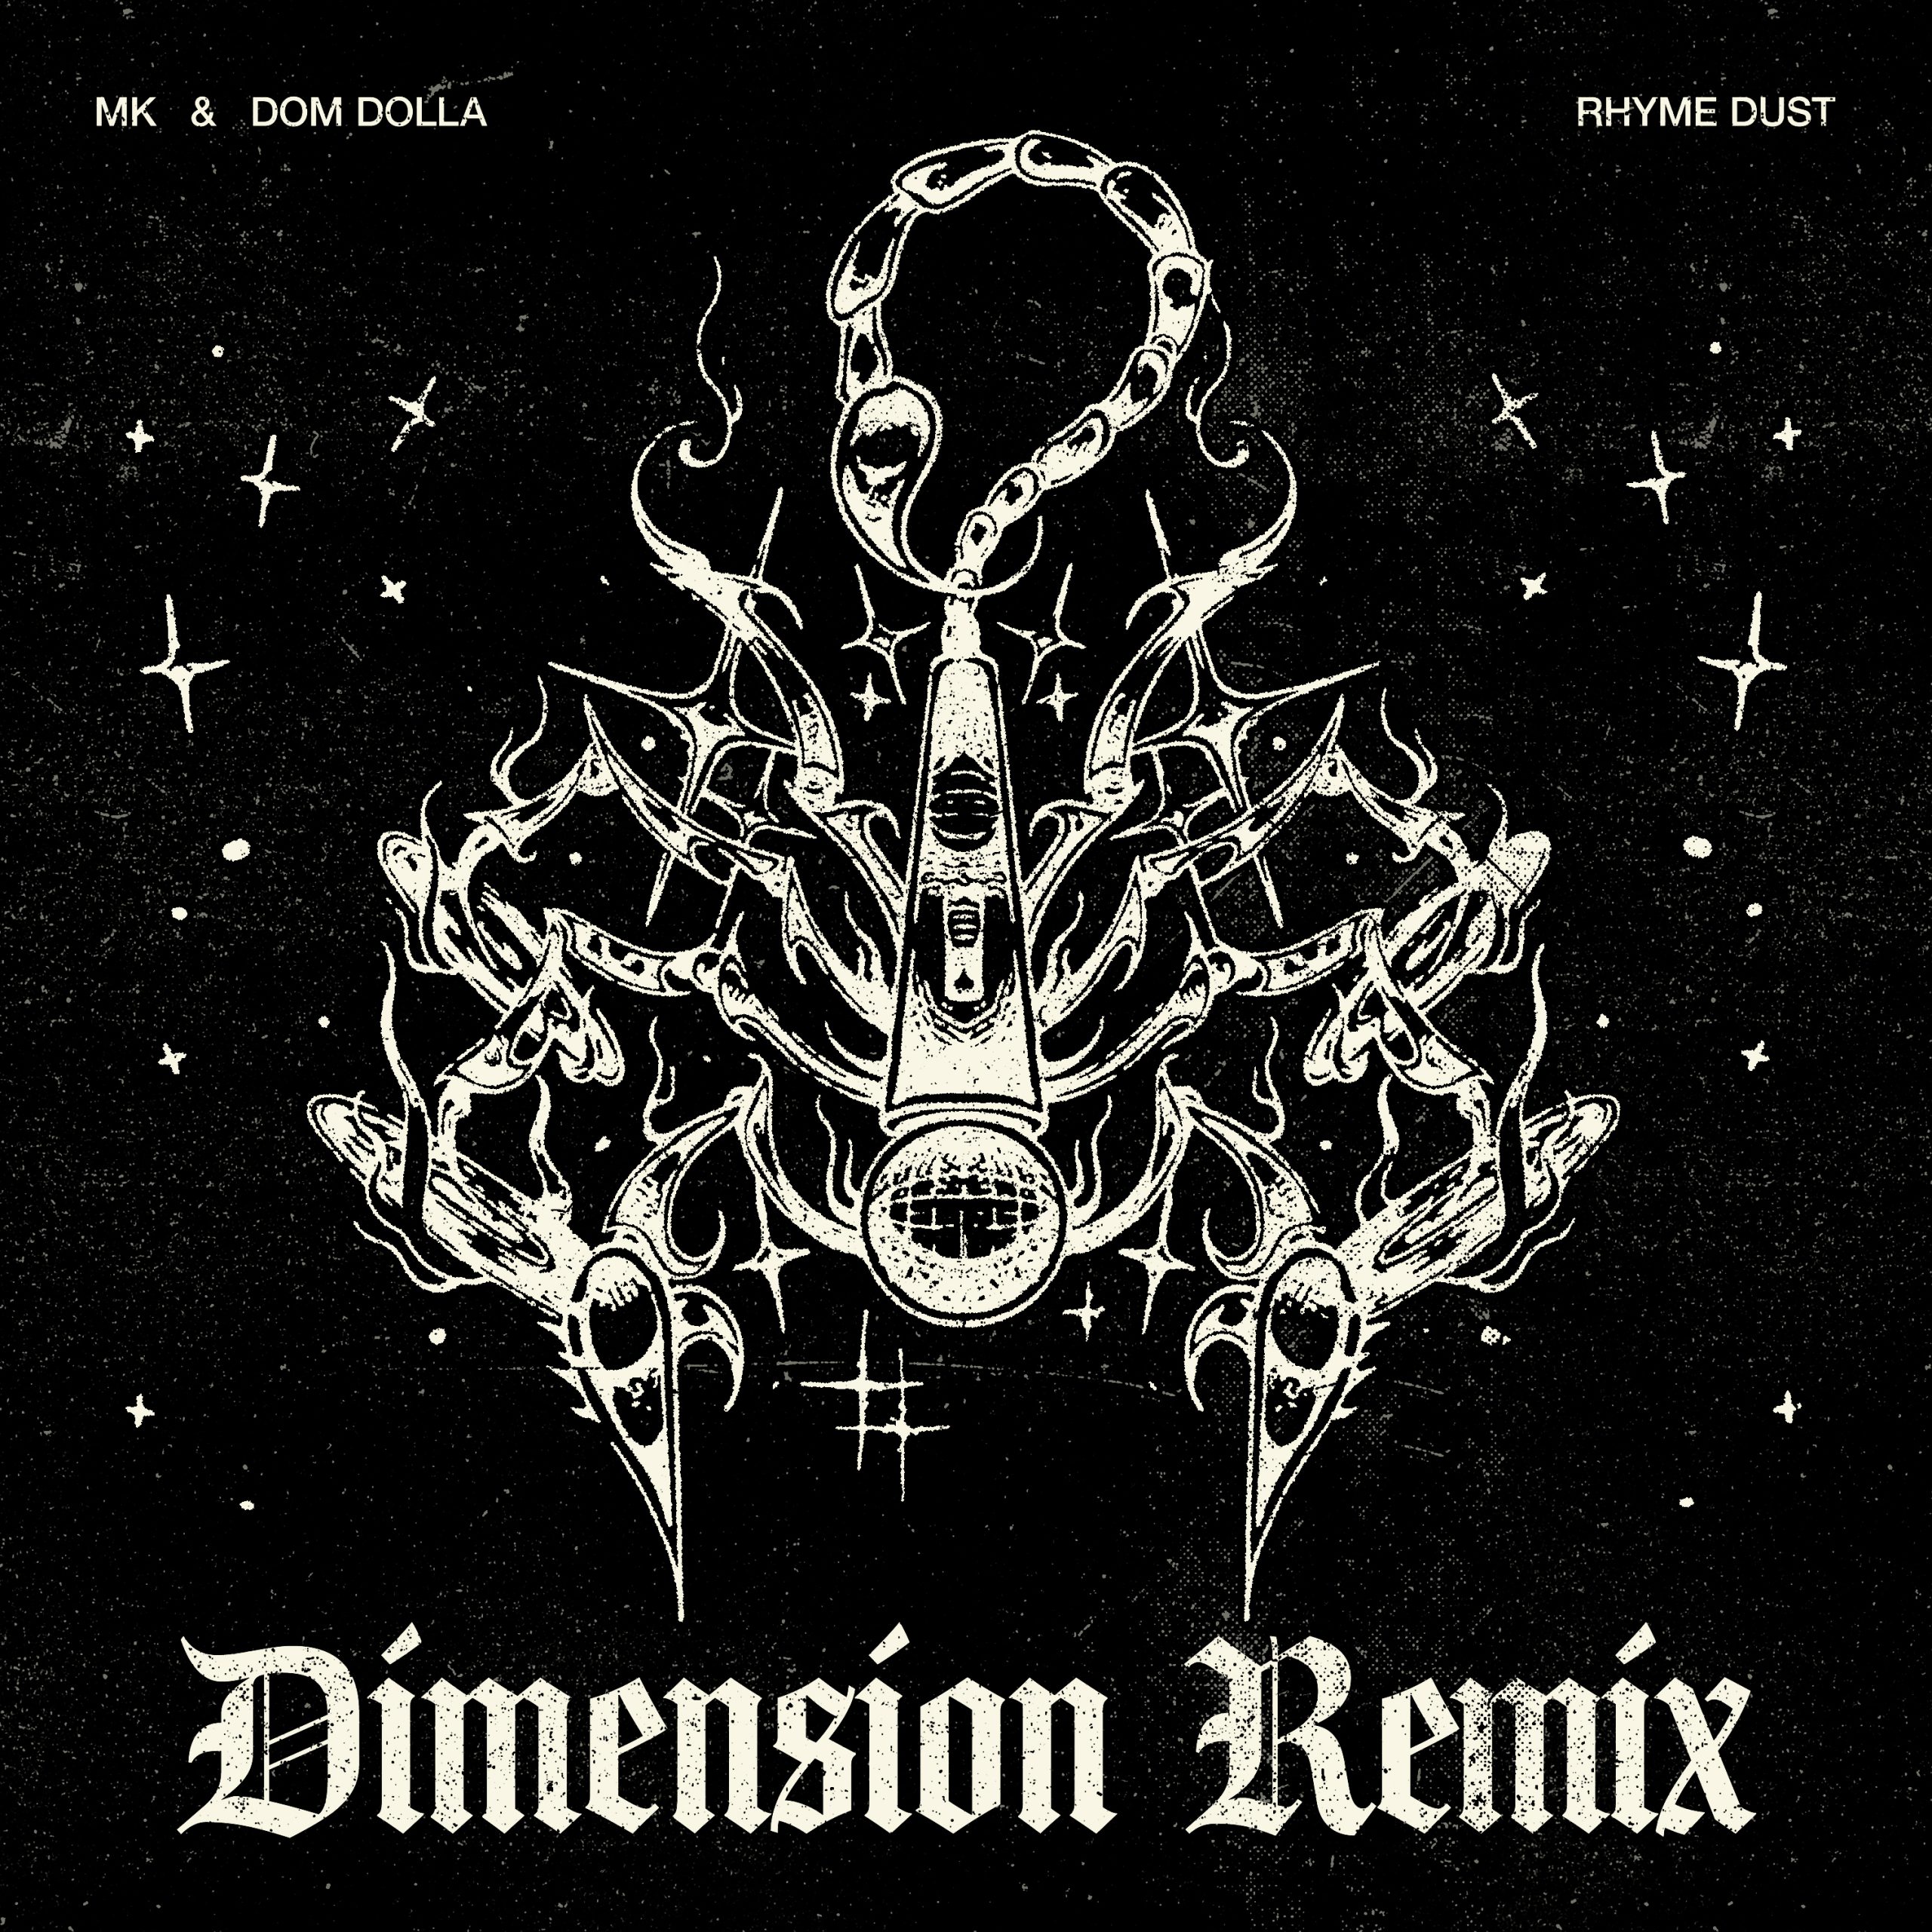 Dimension remix of MK, Dom Dolla “Rhyme Dust”